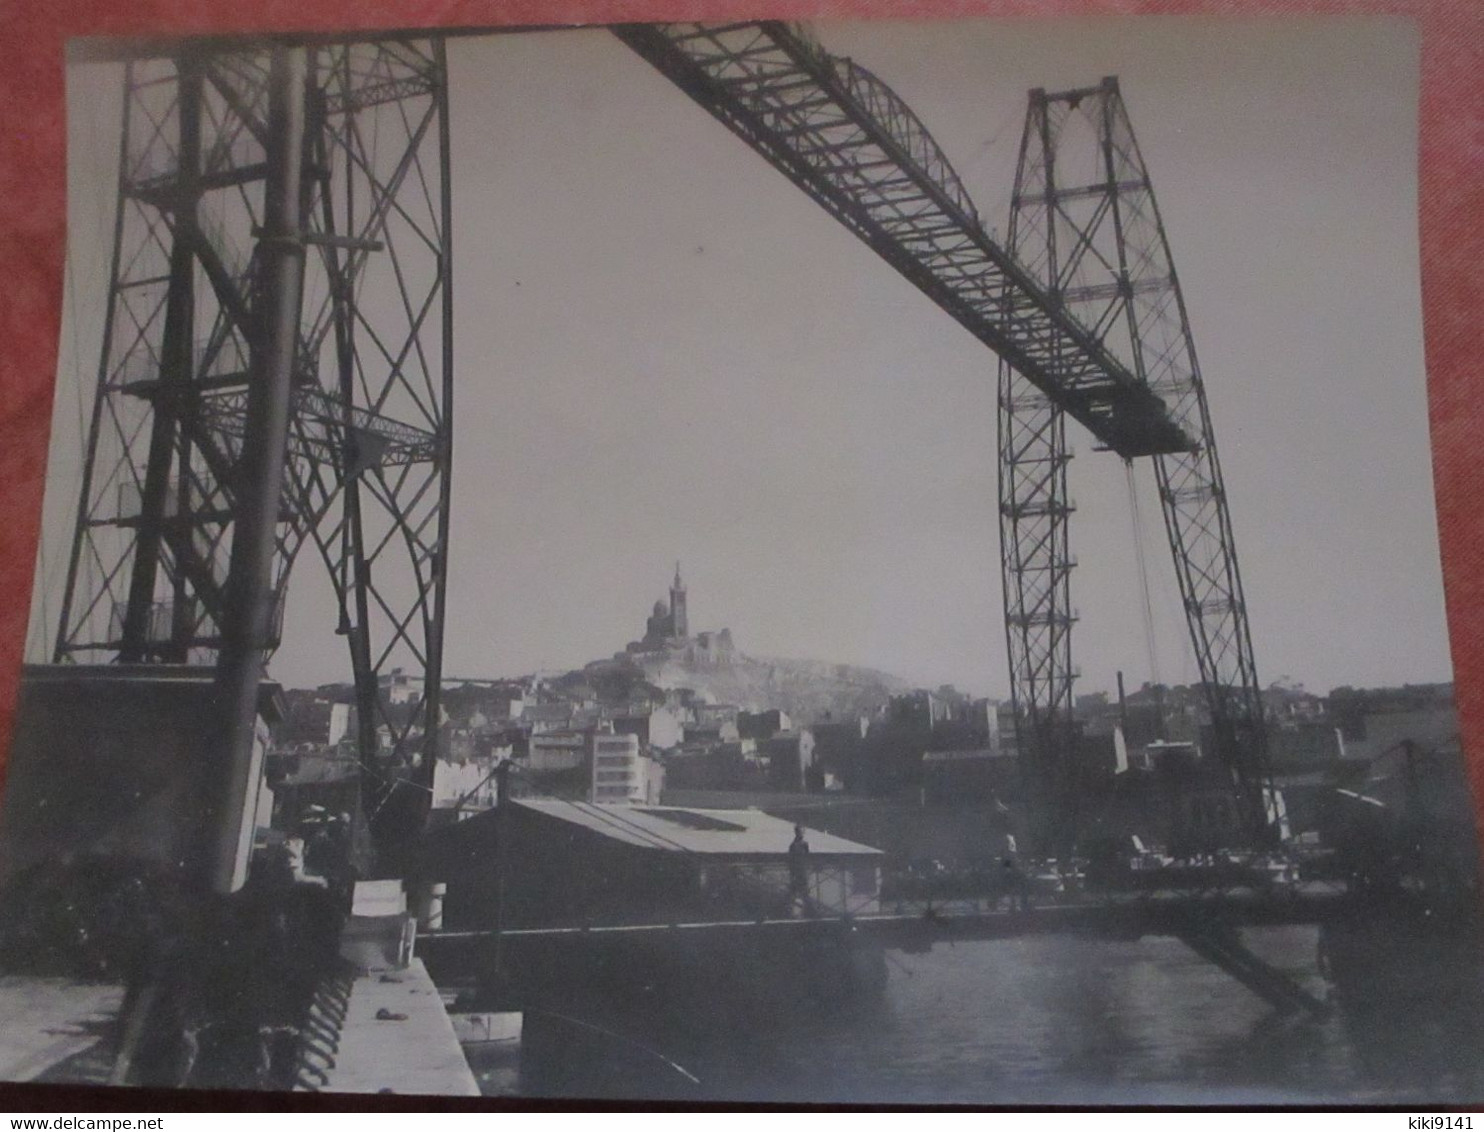 Le Pont Transbordeur - Joliette, Zone Portuaire